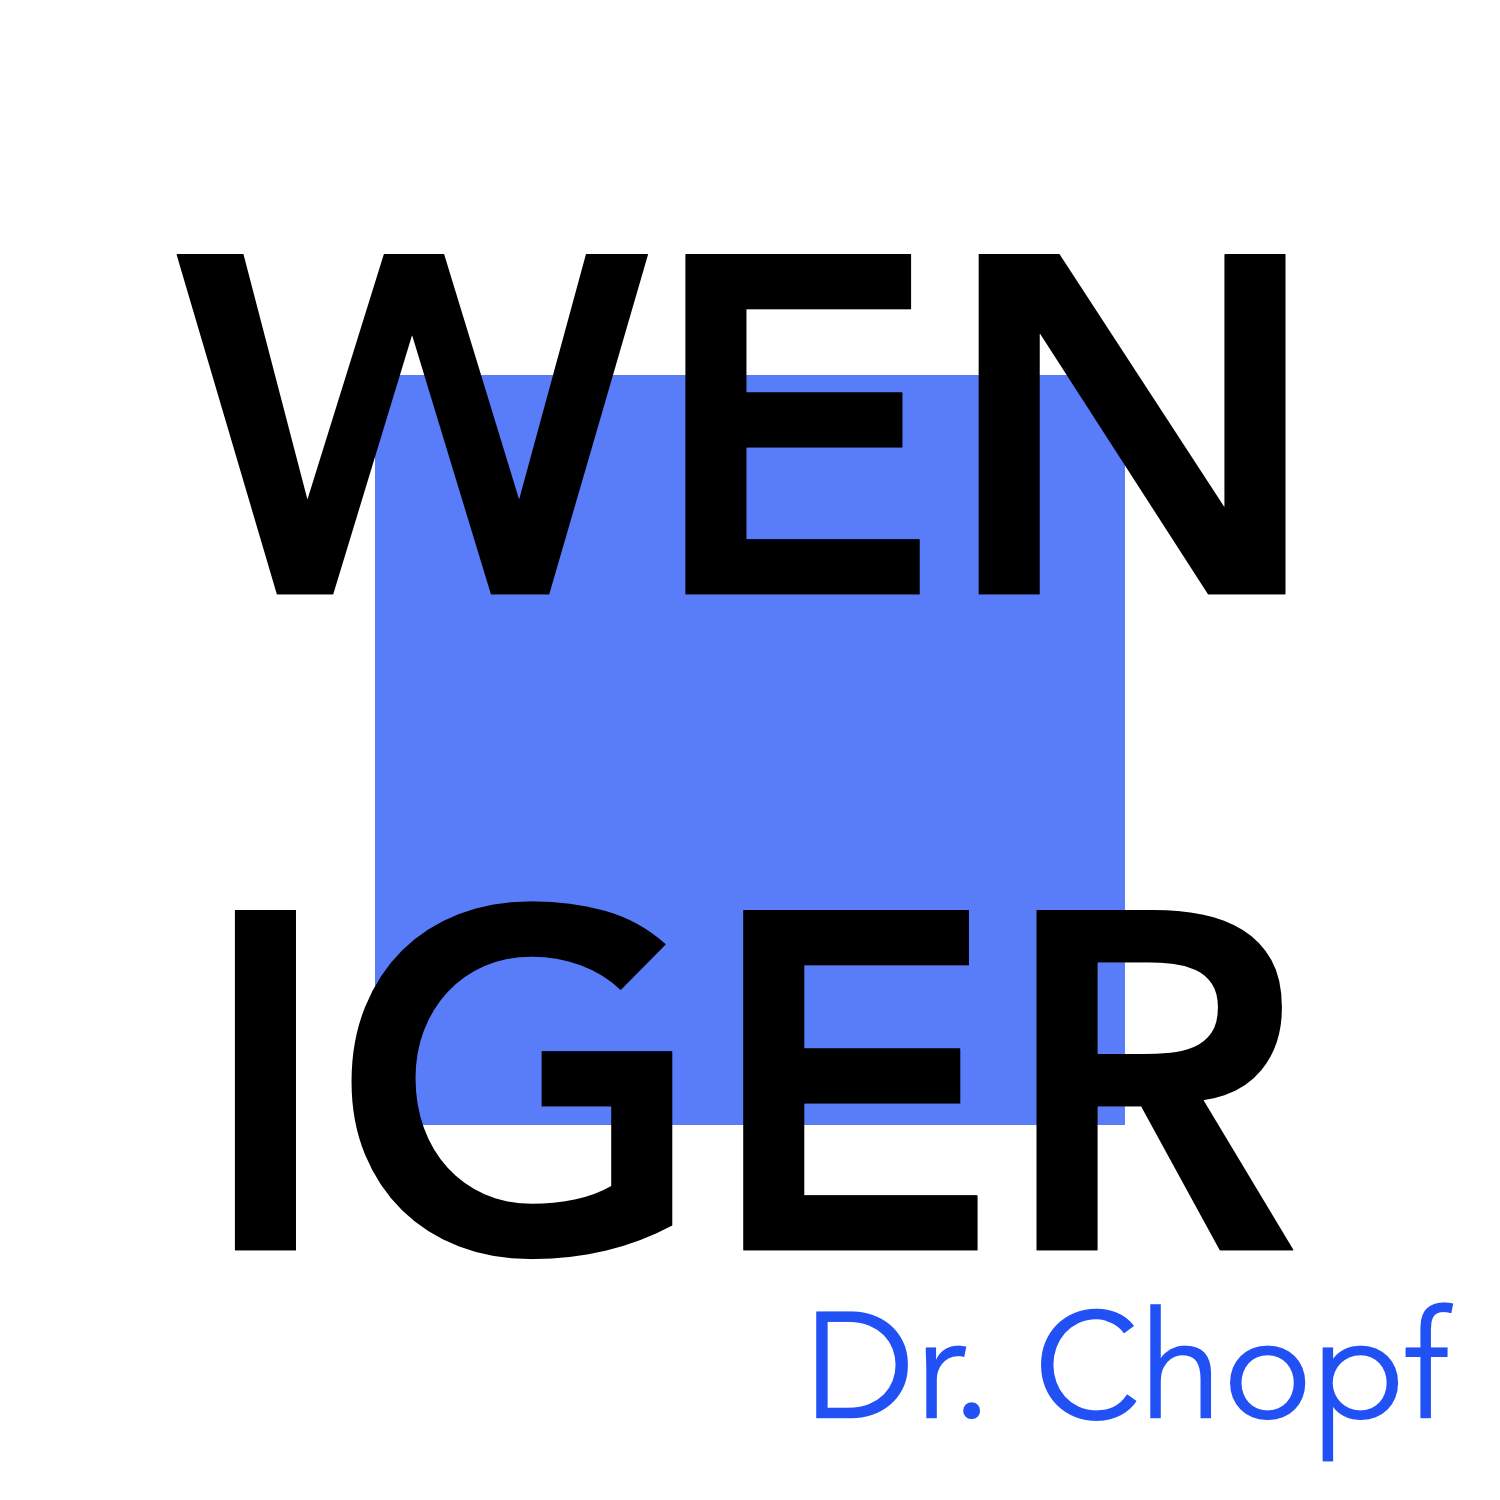 OUT NOW! Die neue Single von Dr. Chopf - jetzt auf allen gängigen Musik-Plattformen.